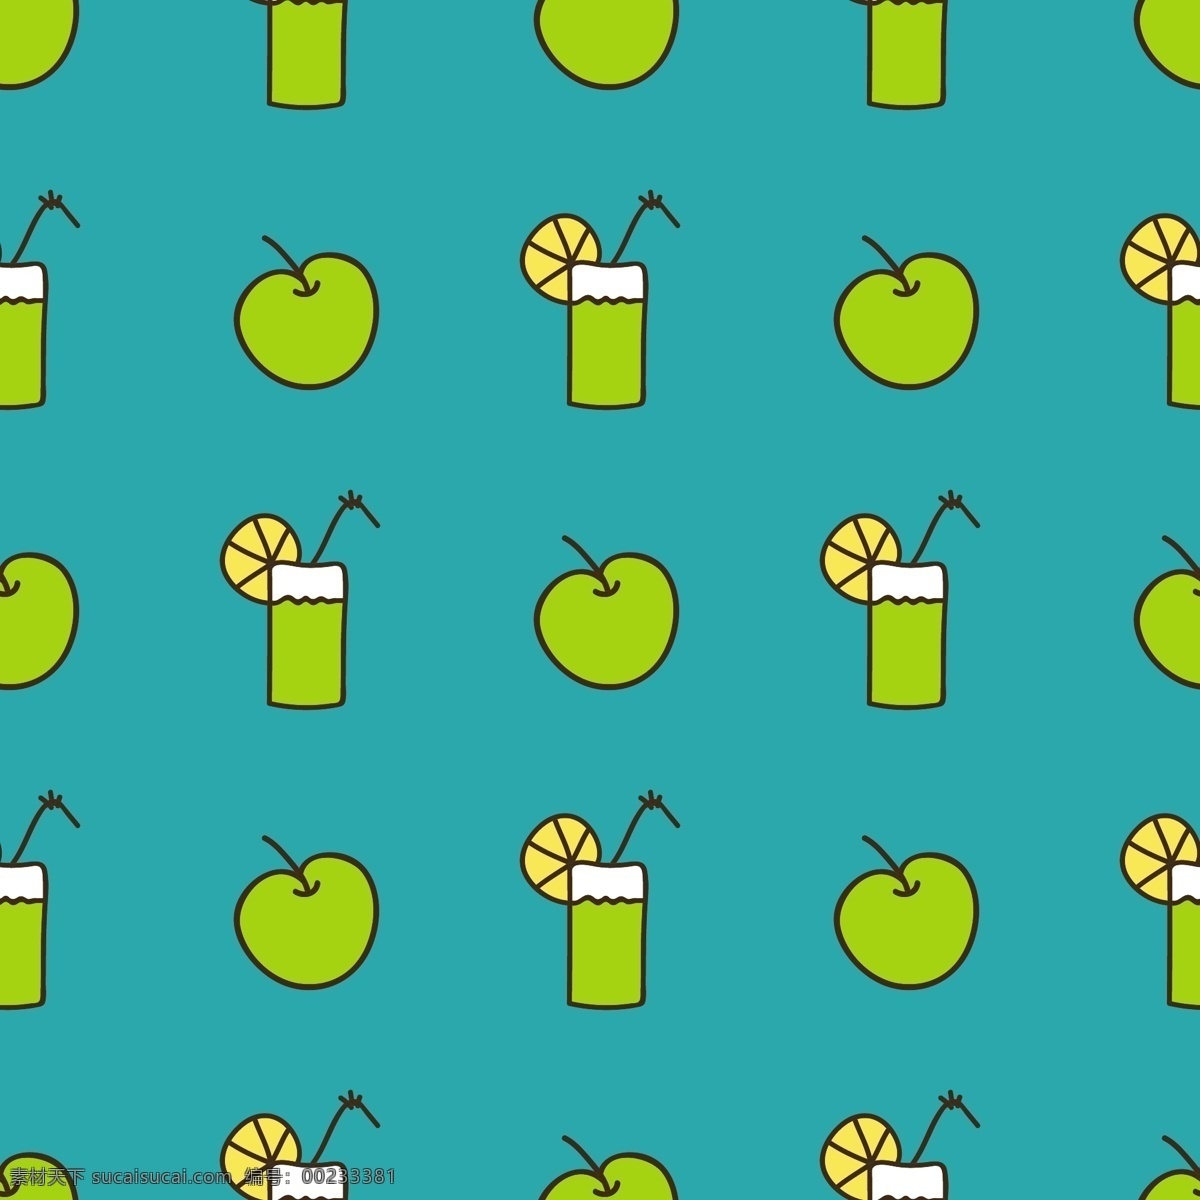 苹果 夏日 水果 冷饮 手绘 纹理 图案 矢量 青苹果 杯子 果汁 暑假 甜筒 创意 涂鸦 小清新 卡通 填充 插画 背景 海报 广告 包装 印刷 夏天